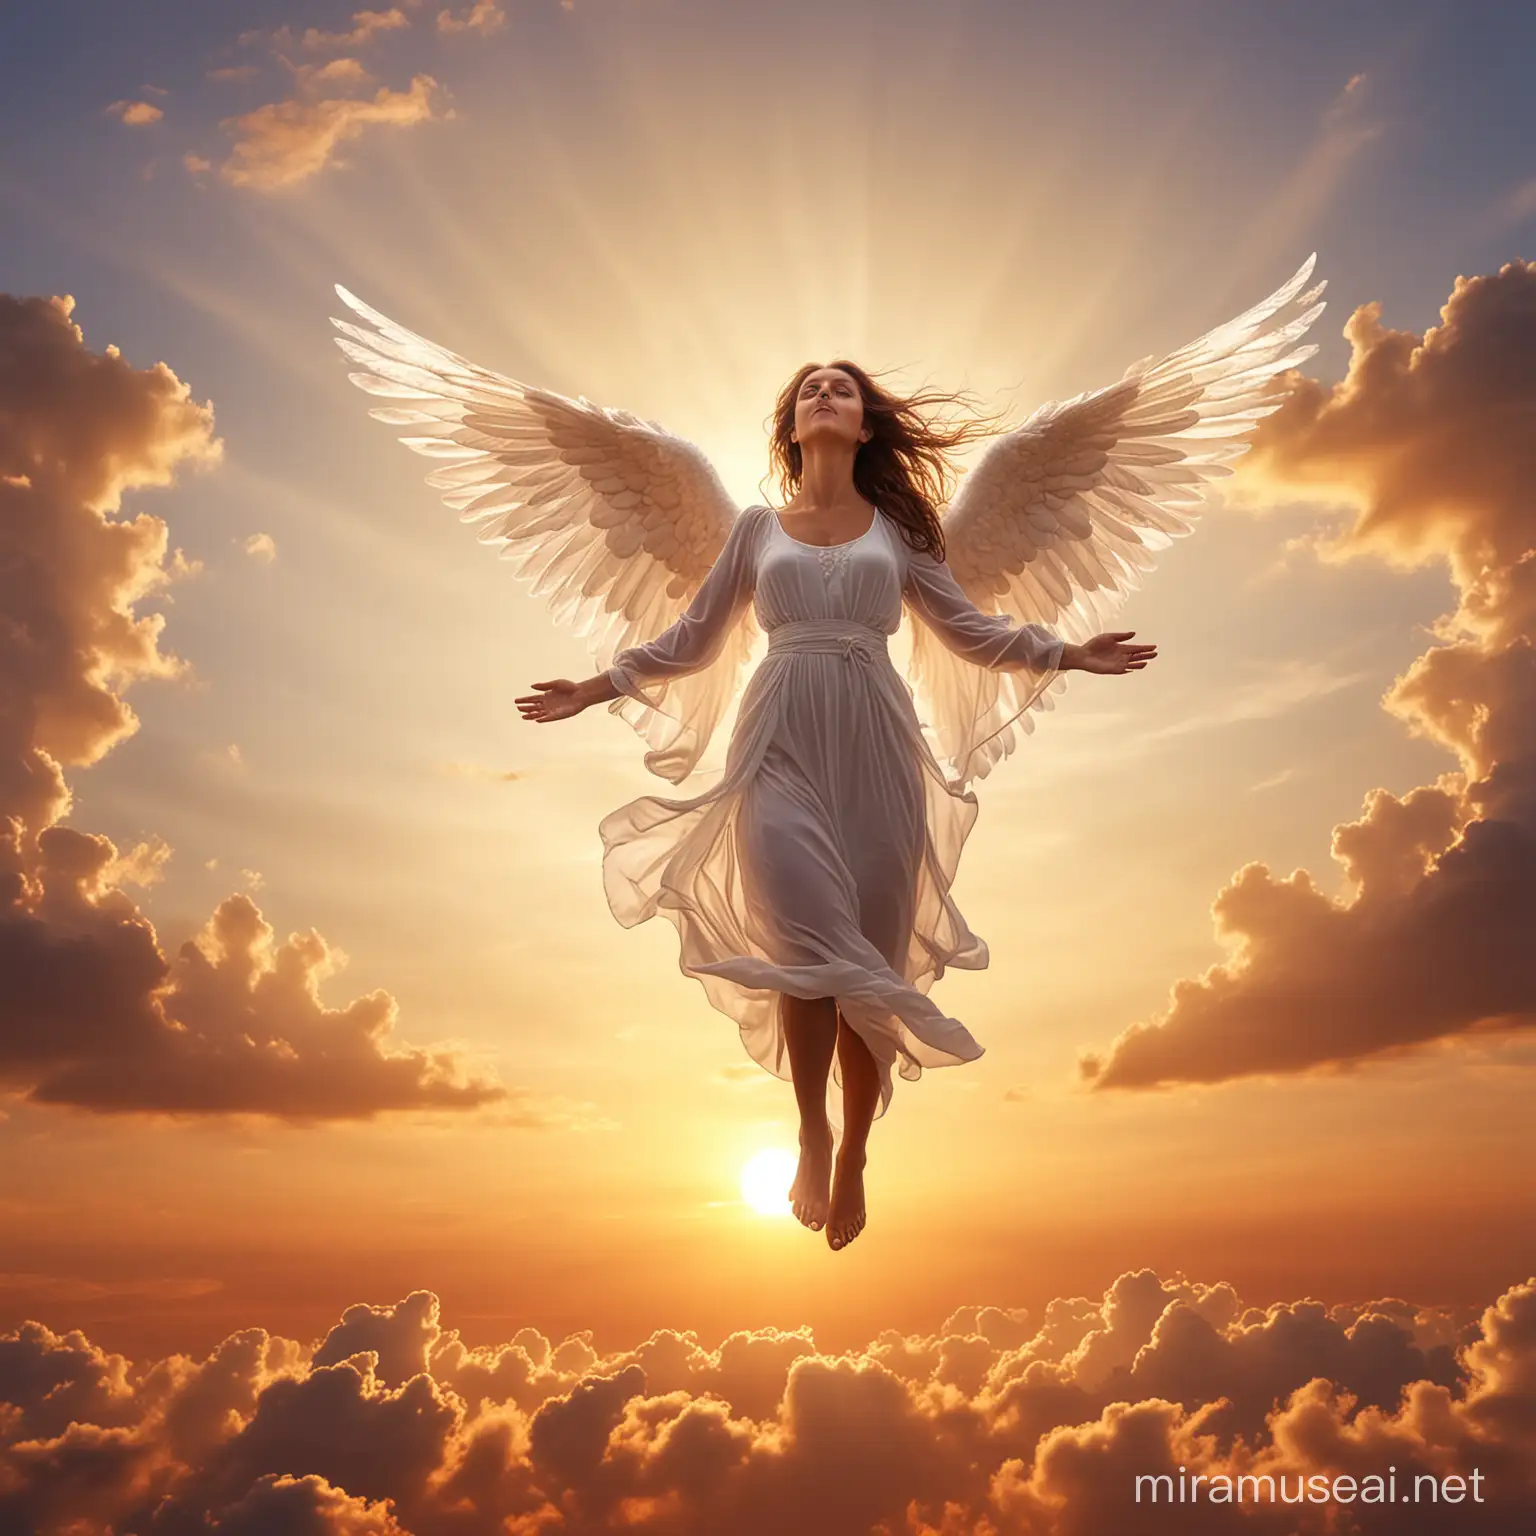 Heavenly Descent Angelic Lady Gracefully Descending at Dusk